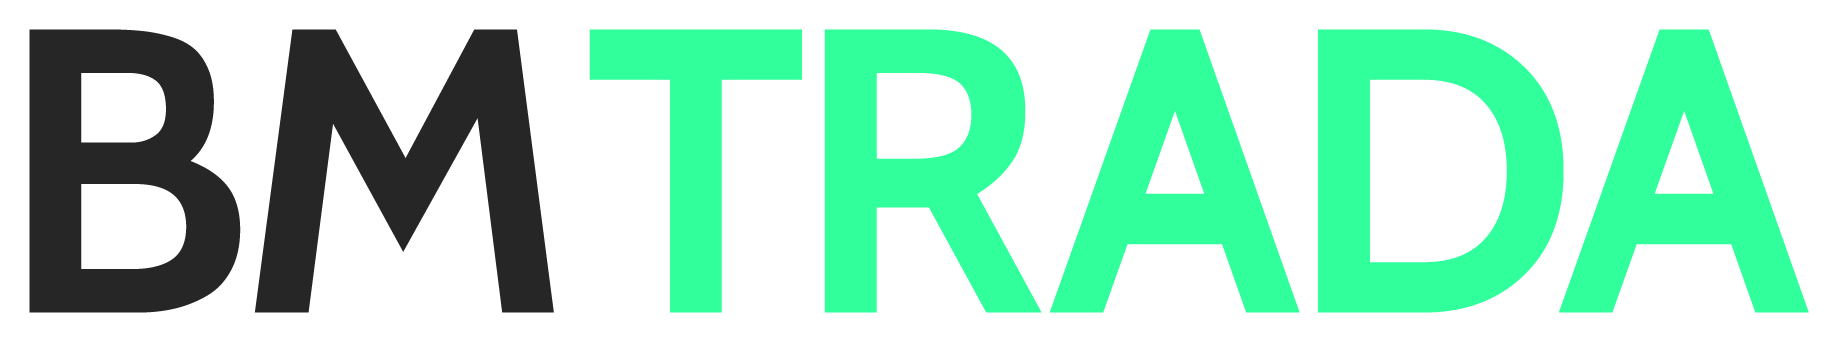 BM TRADA Logo